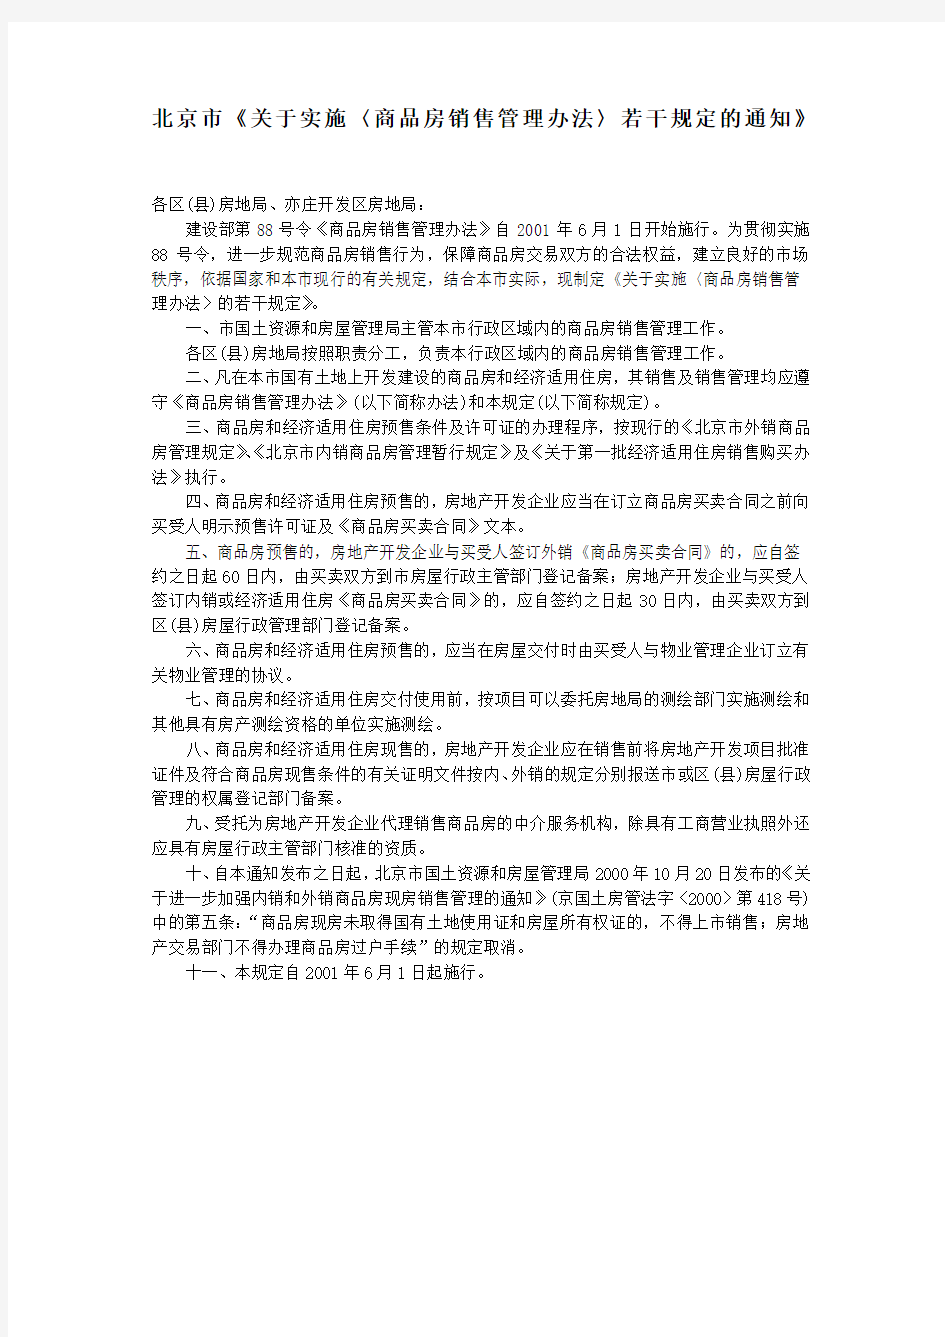 北京市关于实施〈商品房销售管理办法〉若干规定的通知》